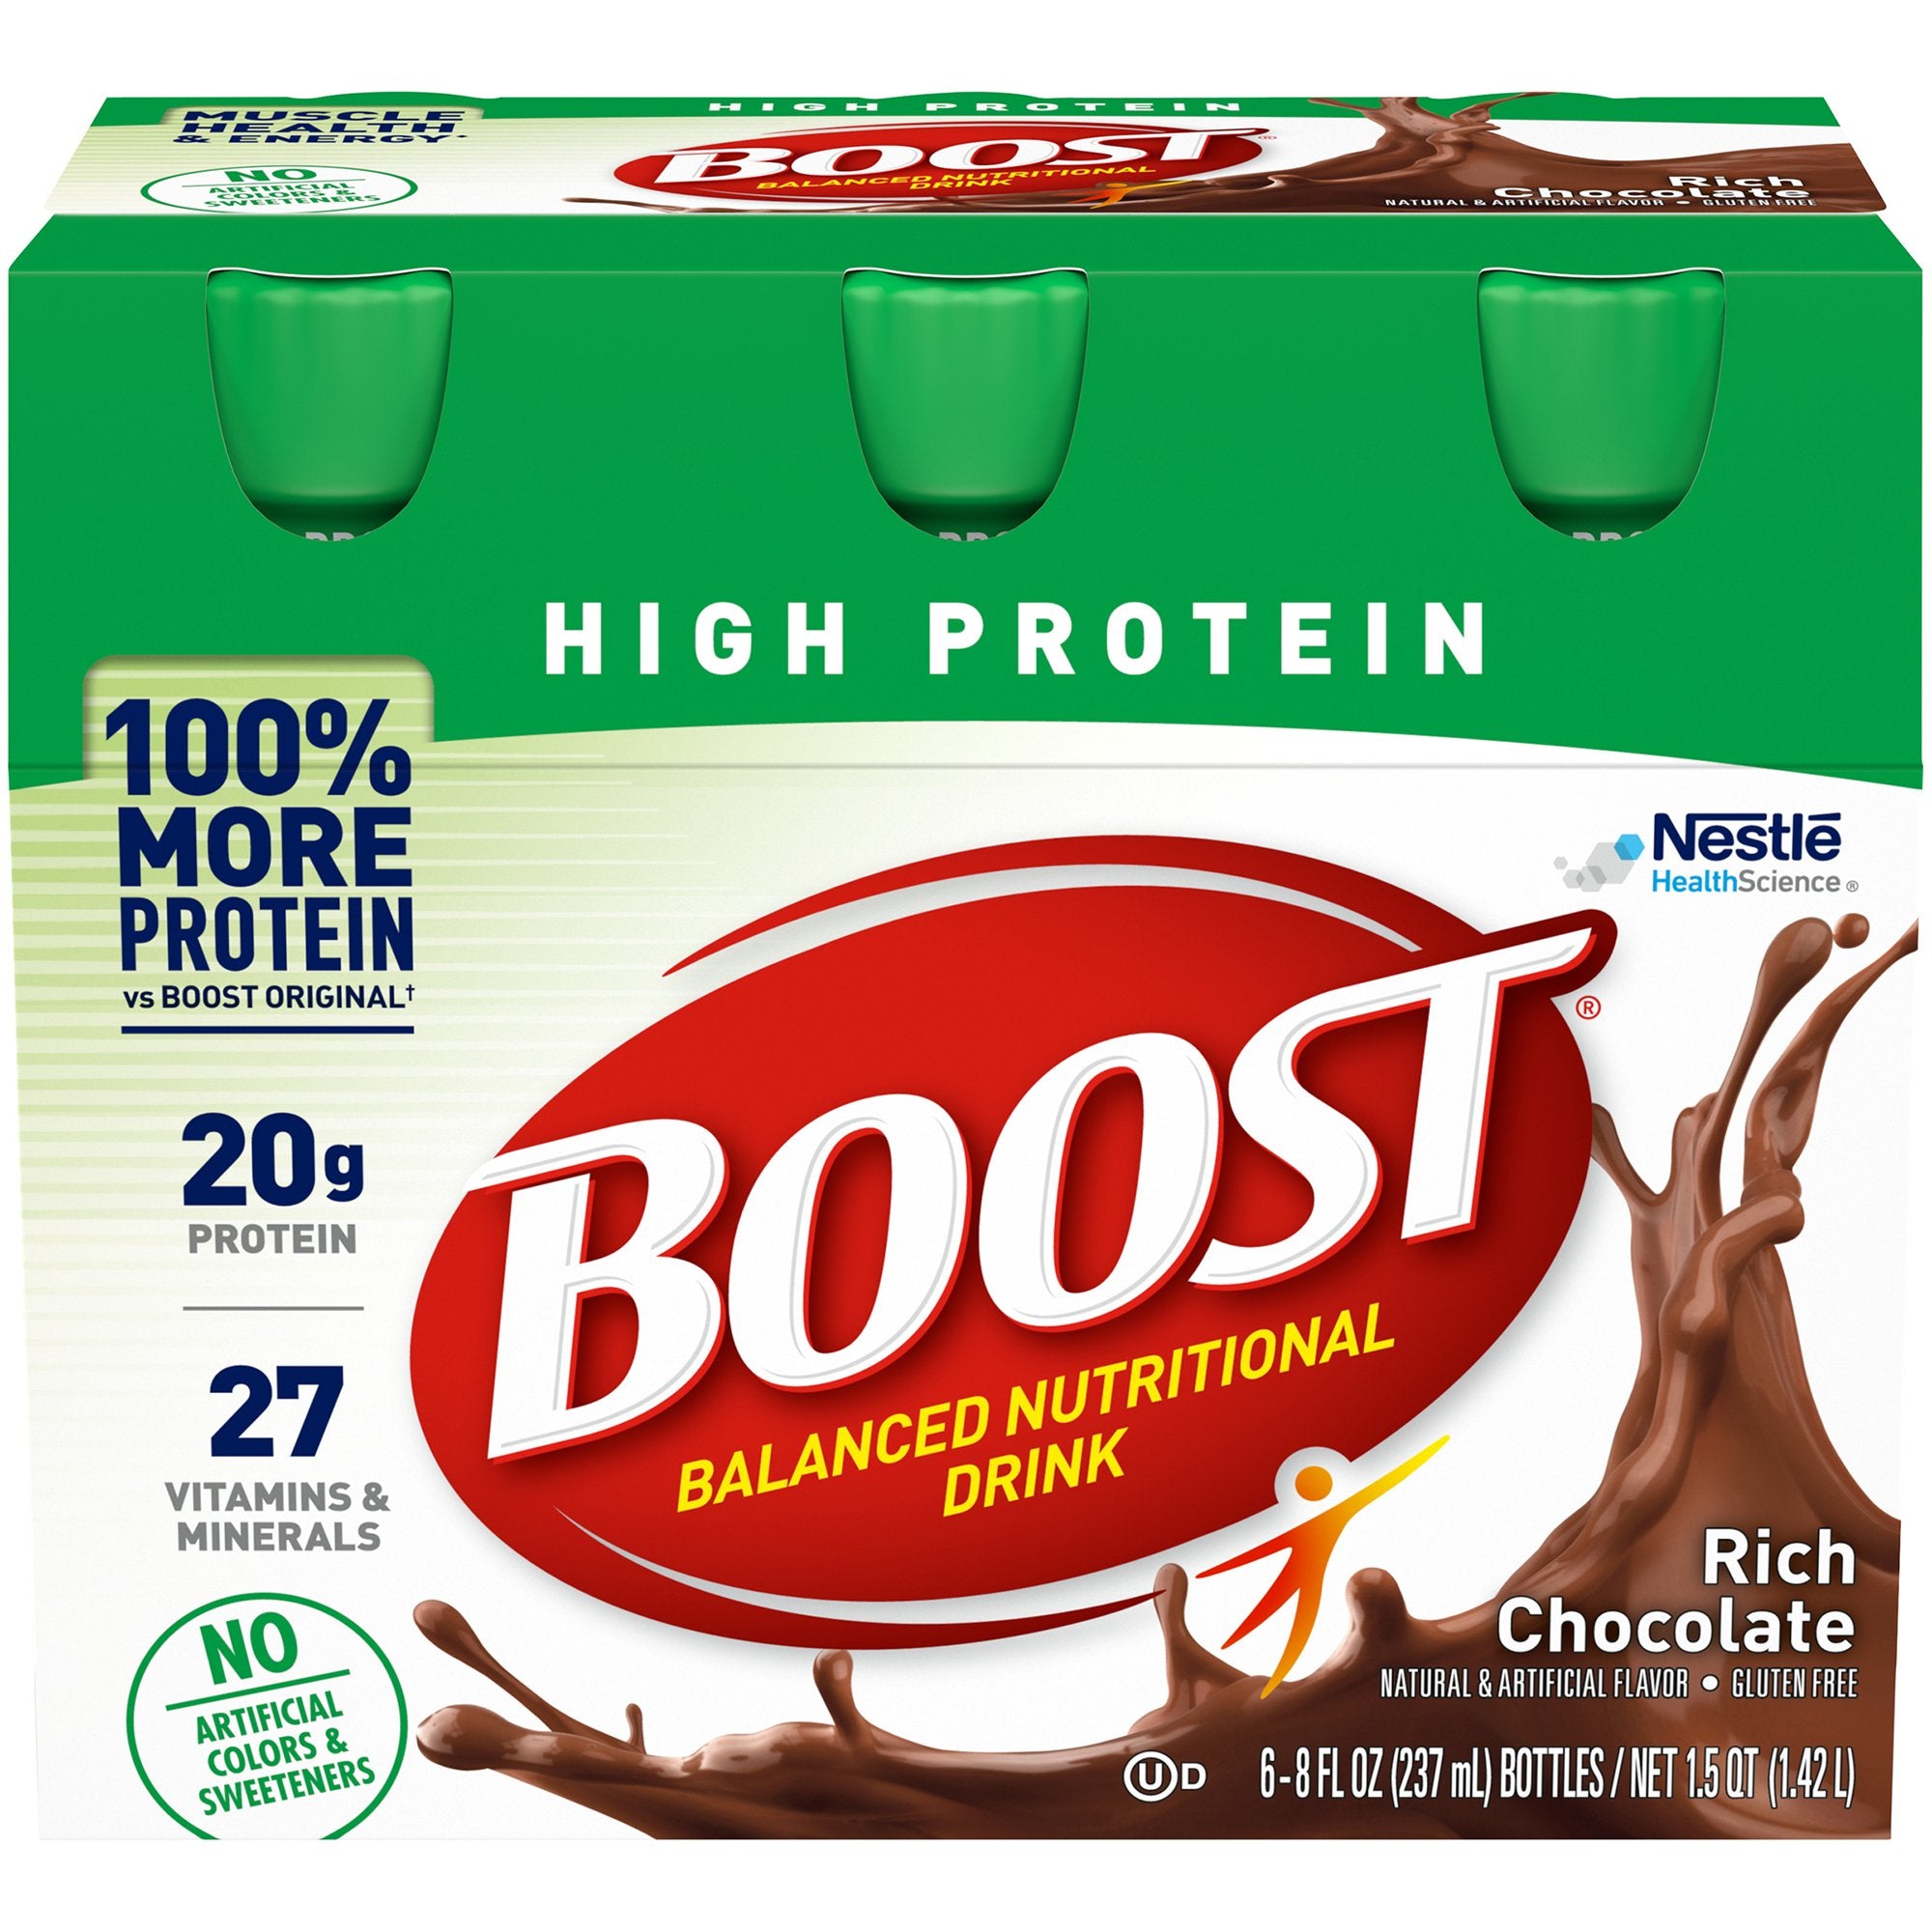 Oral Supplement Boost High Protein Rich Chocolate Flavor Liquid 8 oz. Bottle